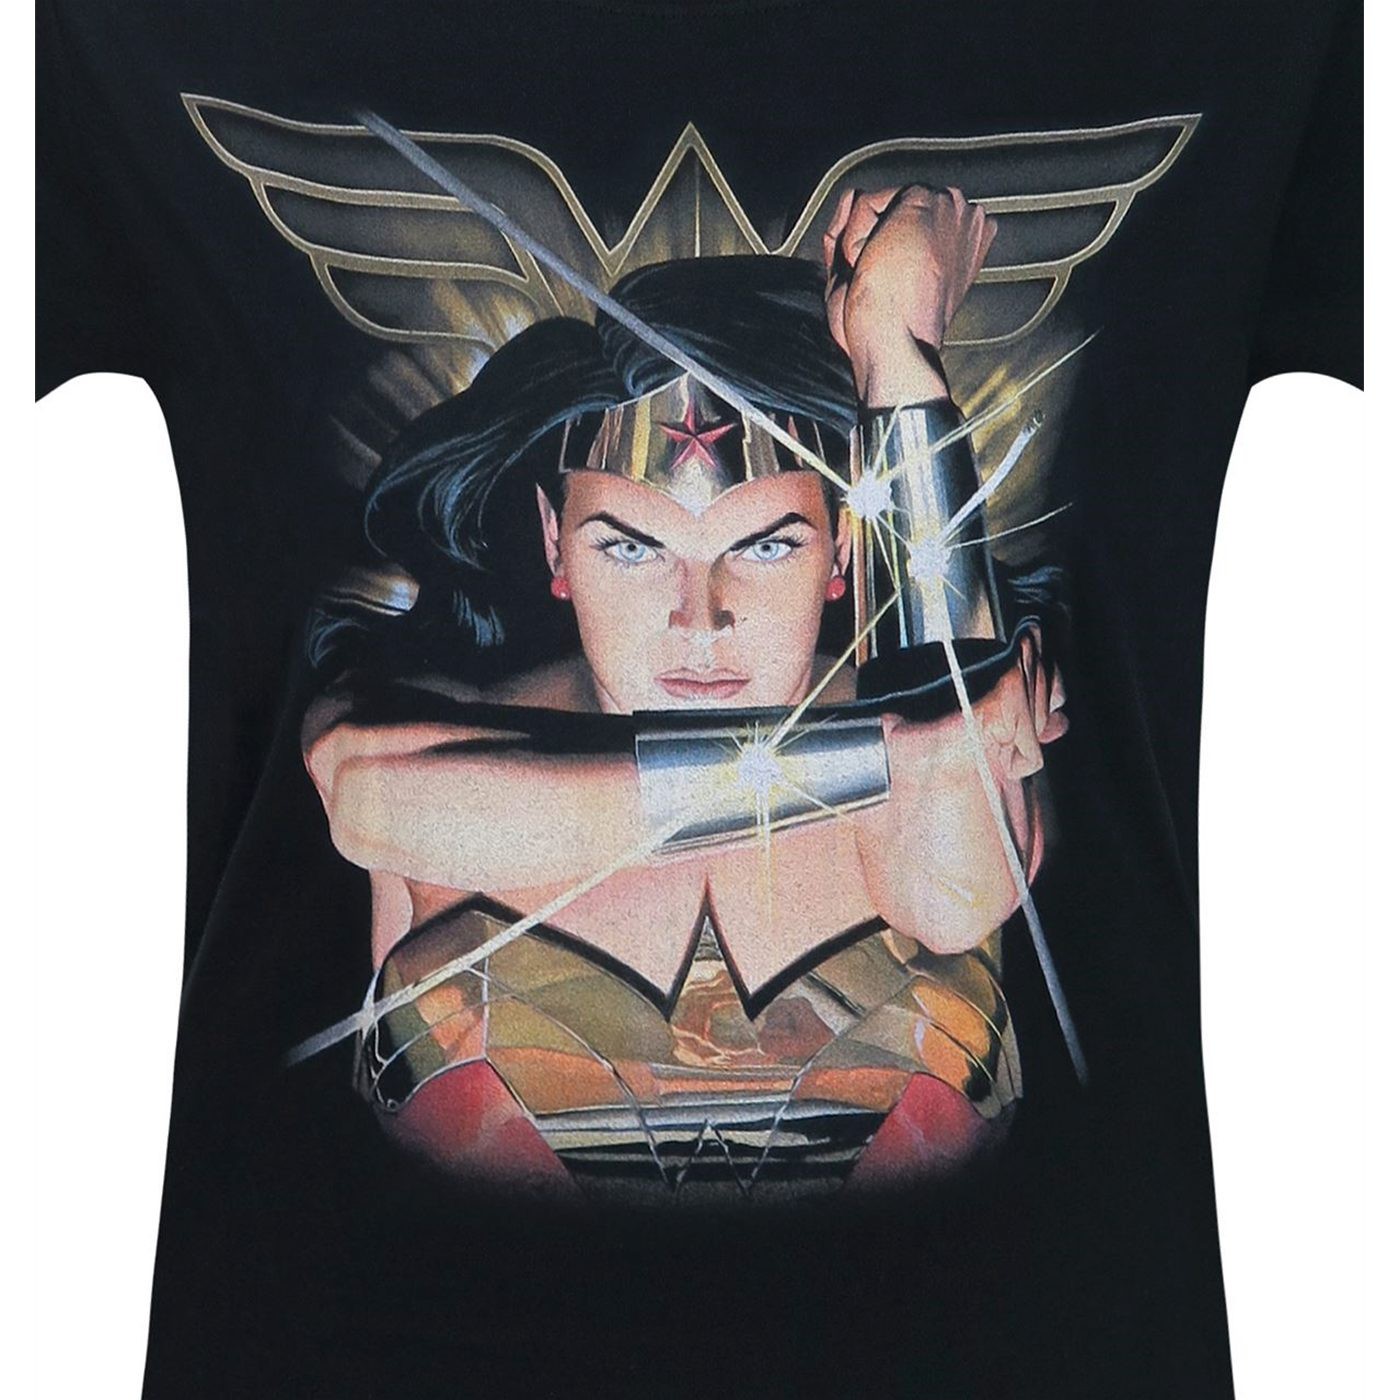 Wonder Woman Deflect Women's T-Shirt